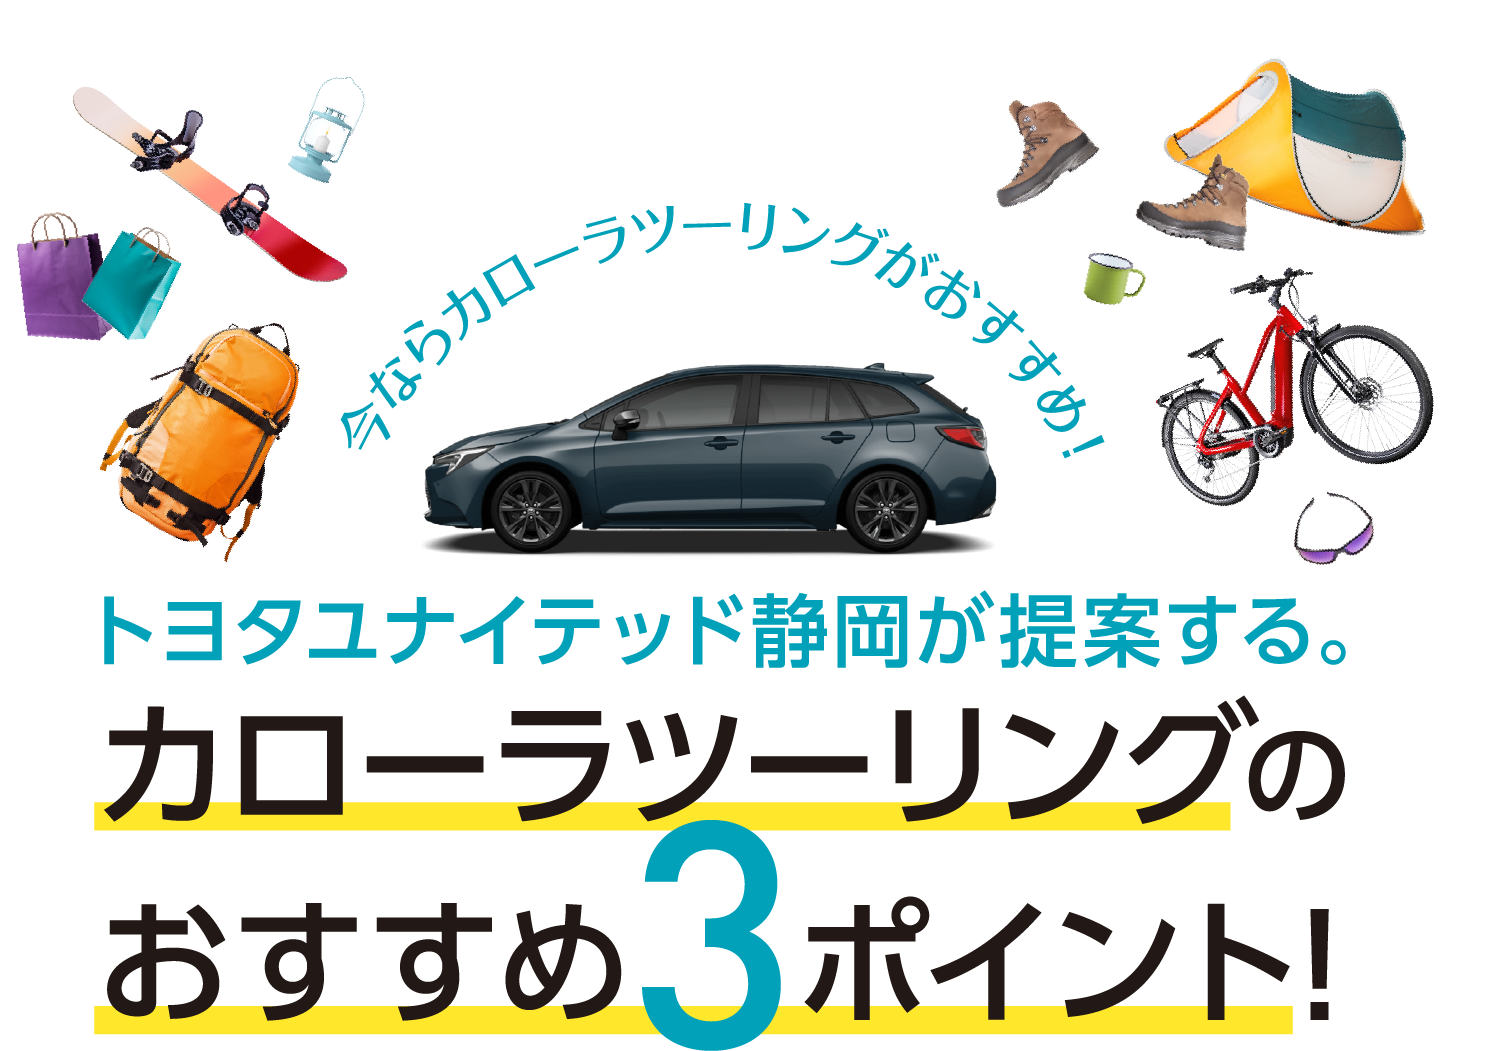 トヨタユナイテッド静岡が提案するカローラツーリングのおすすめ3つのポイント